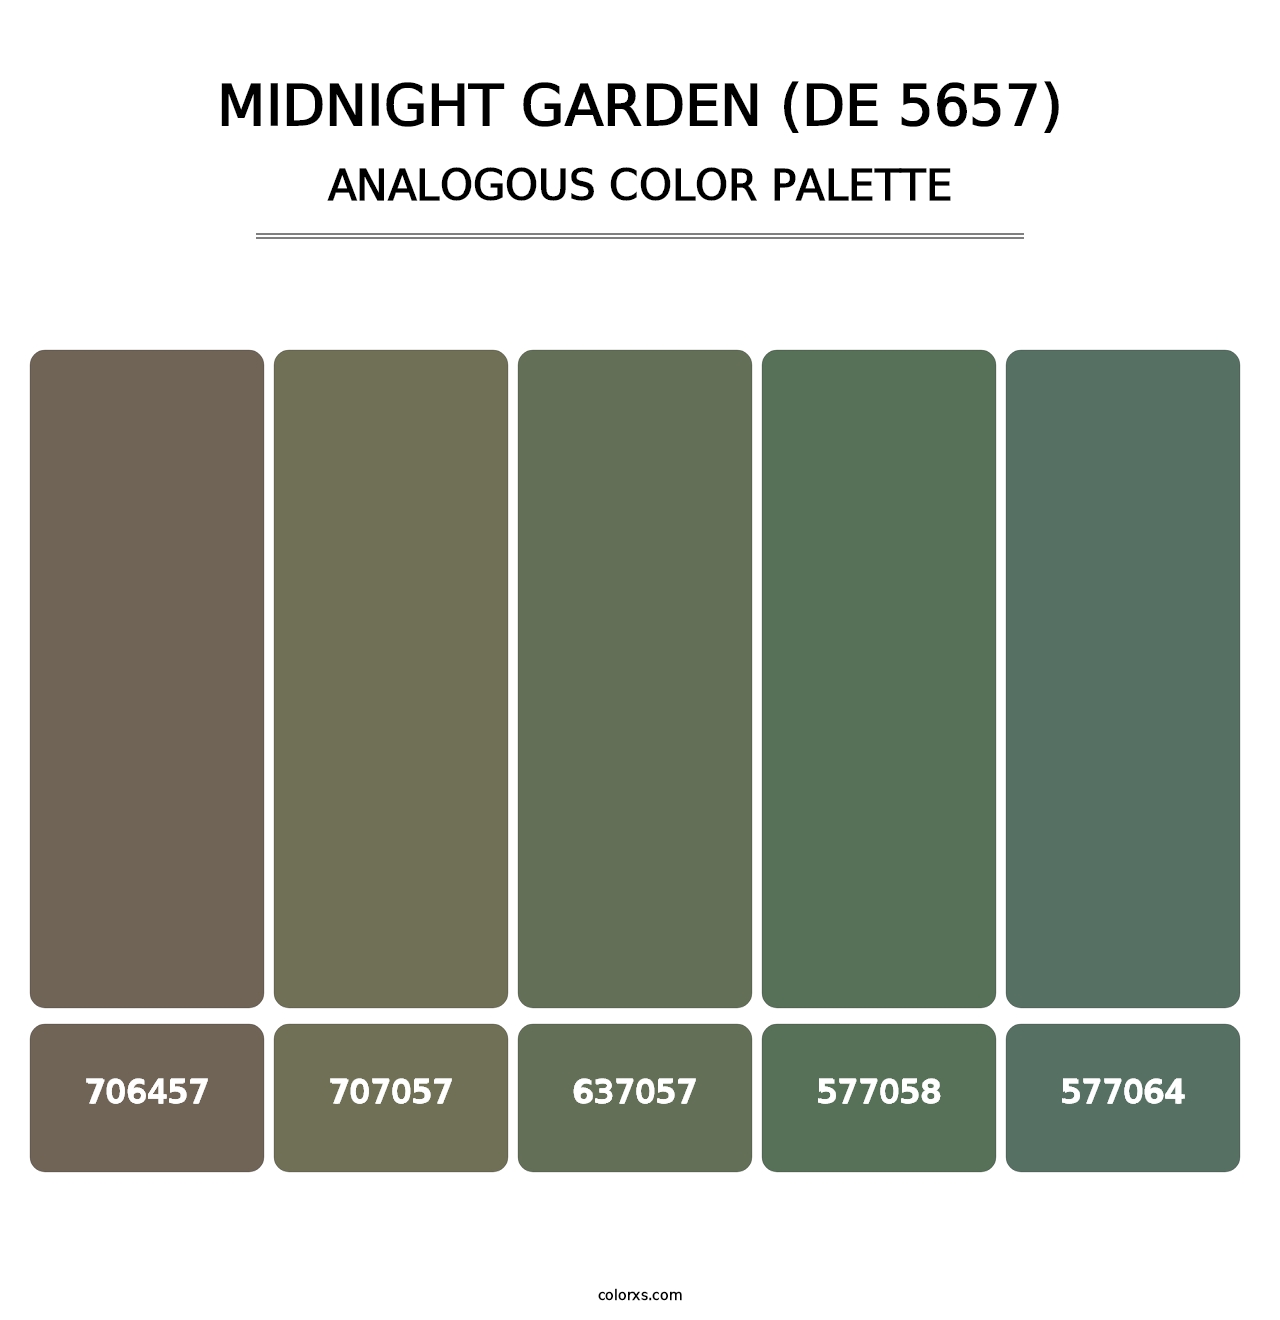 Midnight Garden (DE 5657) - Analogous Color Palette